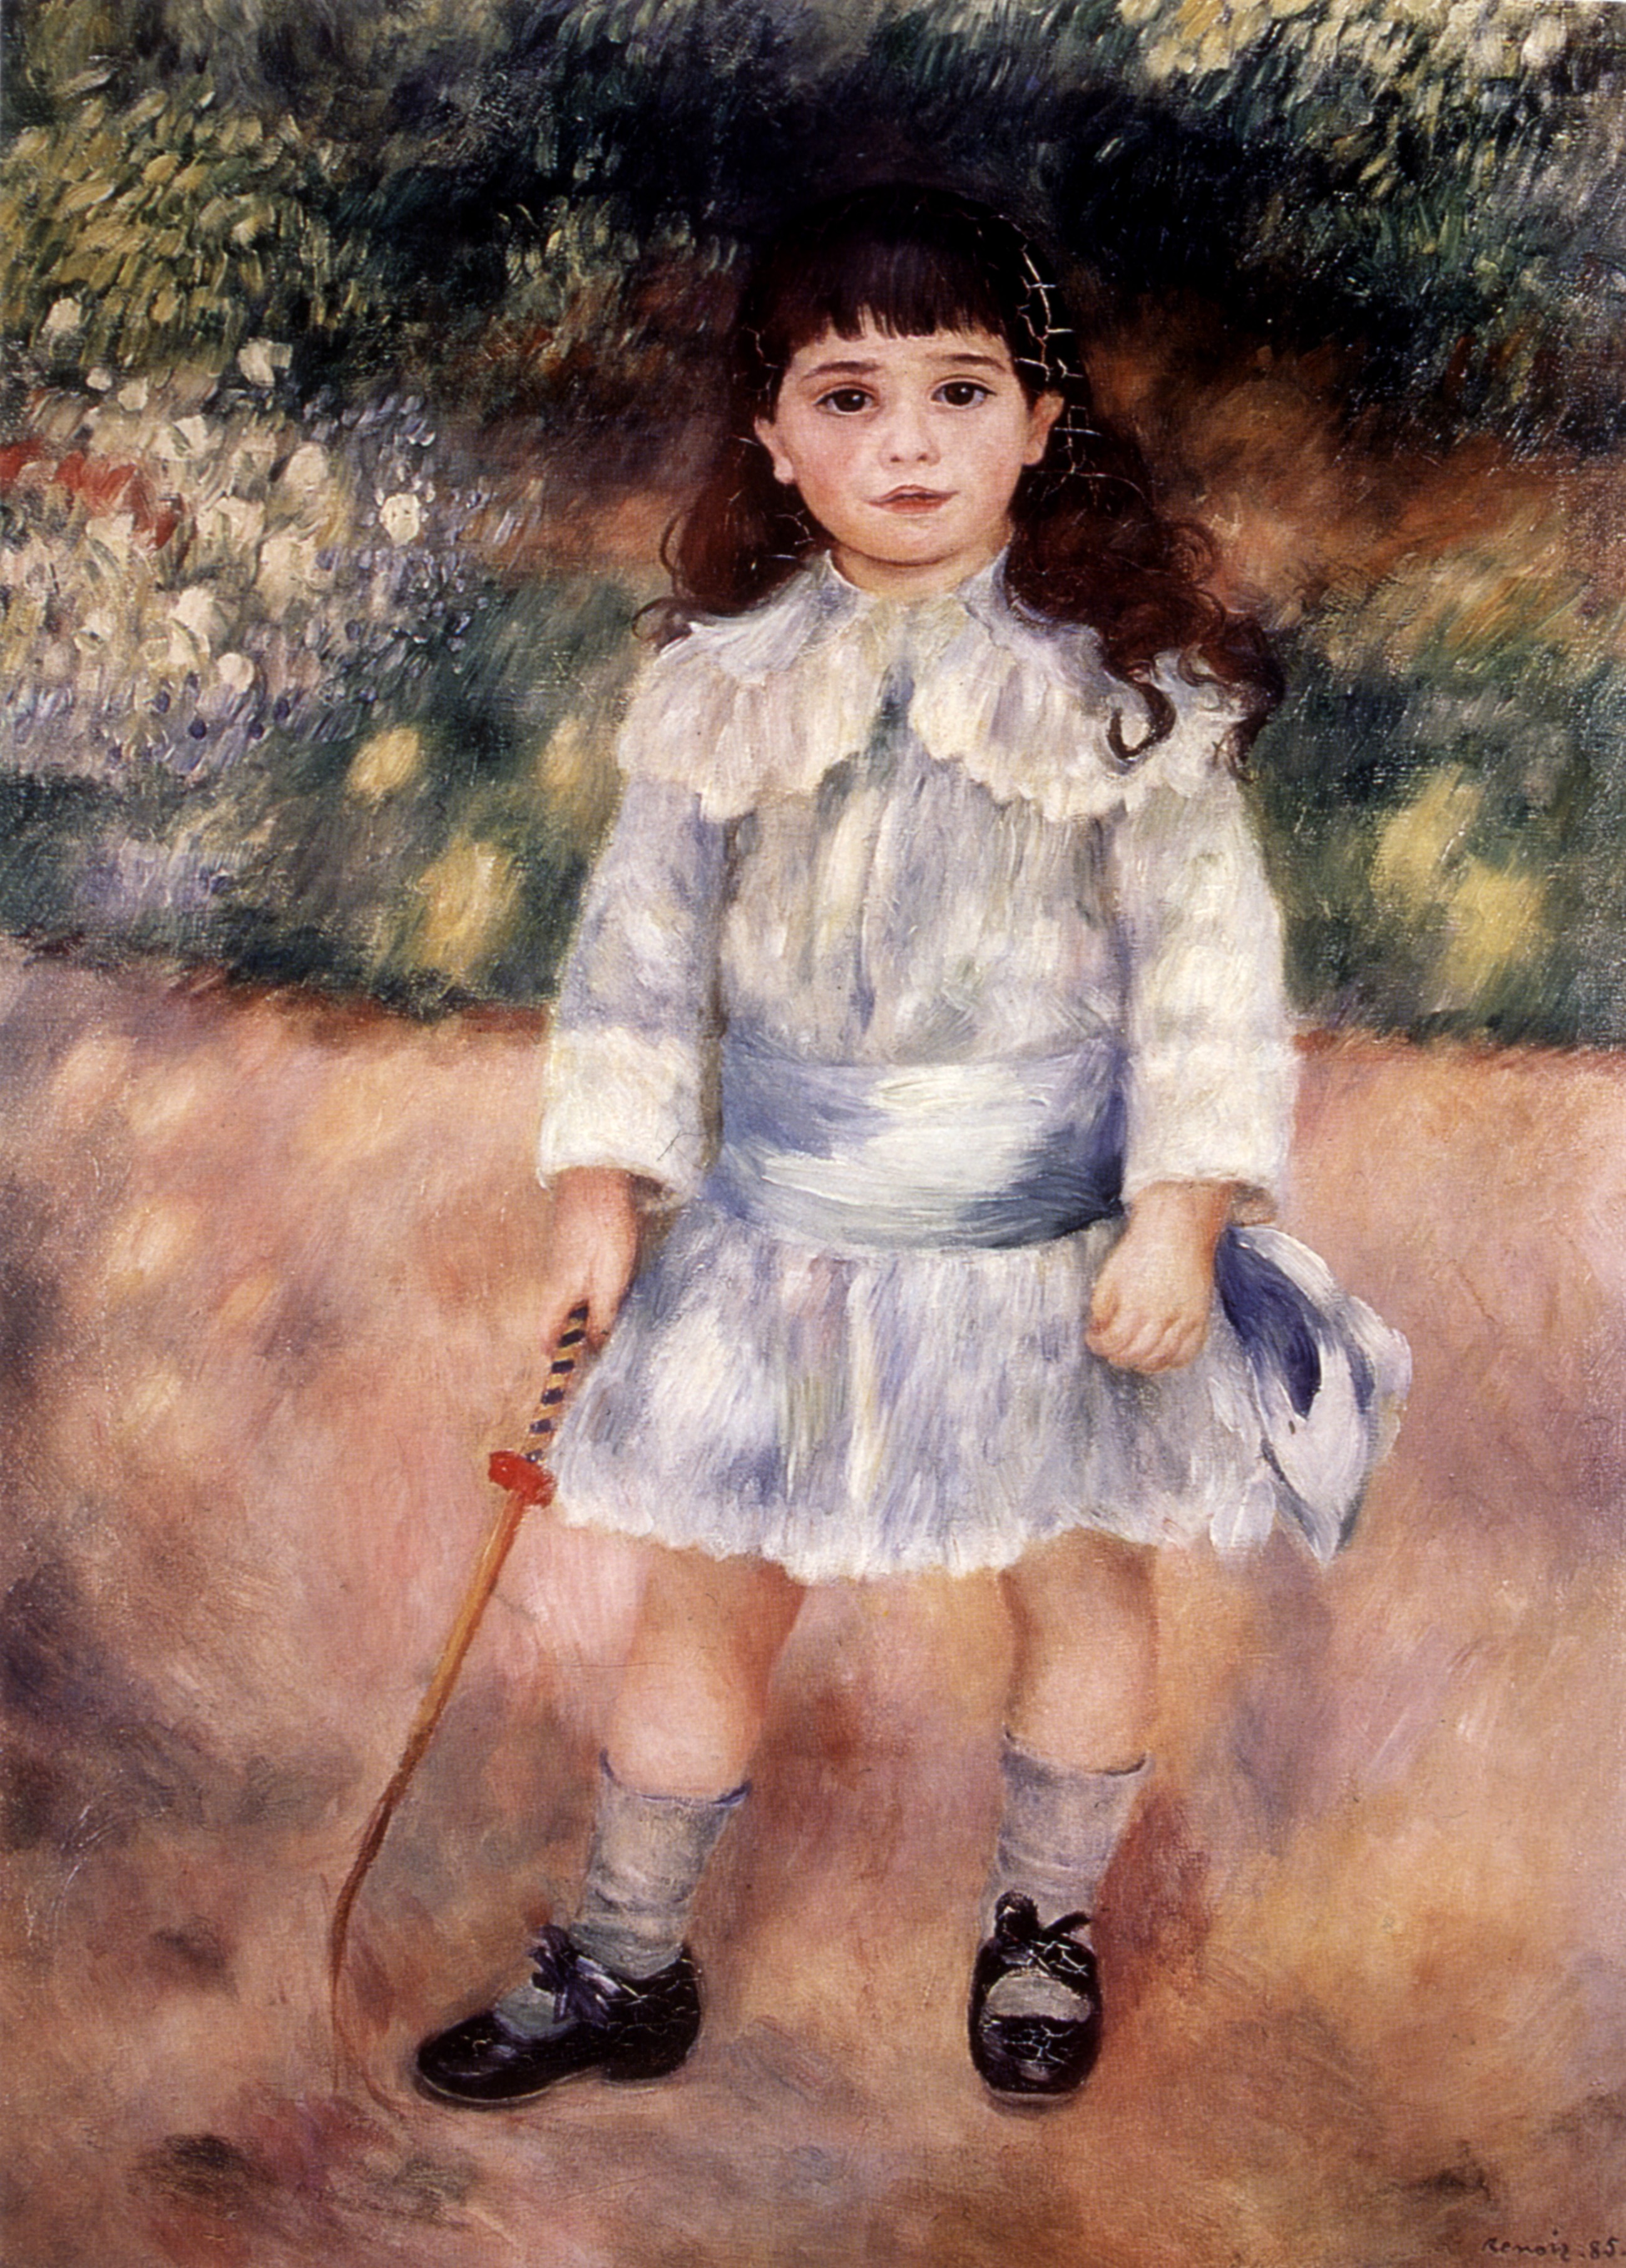 Bambina con frustino, 1885. Olio su tela, 107 x 75 cm. Museo dell' Ermitage, San Pietroburgo. Credito: Photo12/contrasto